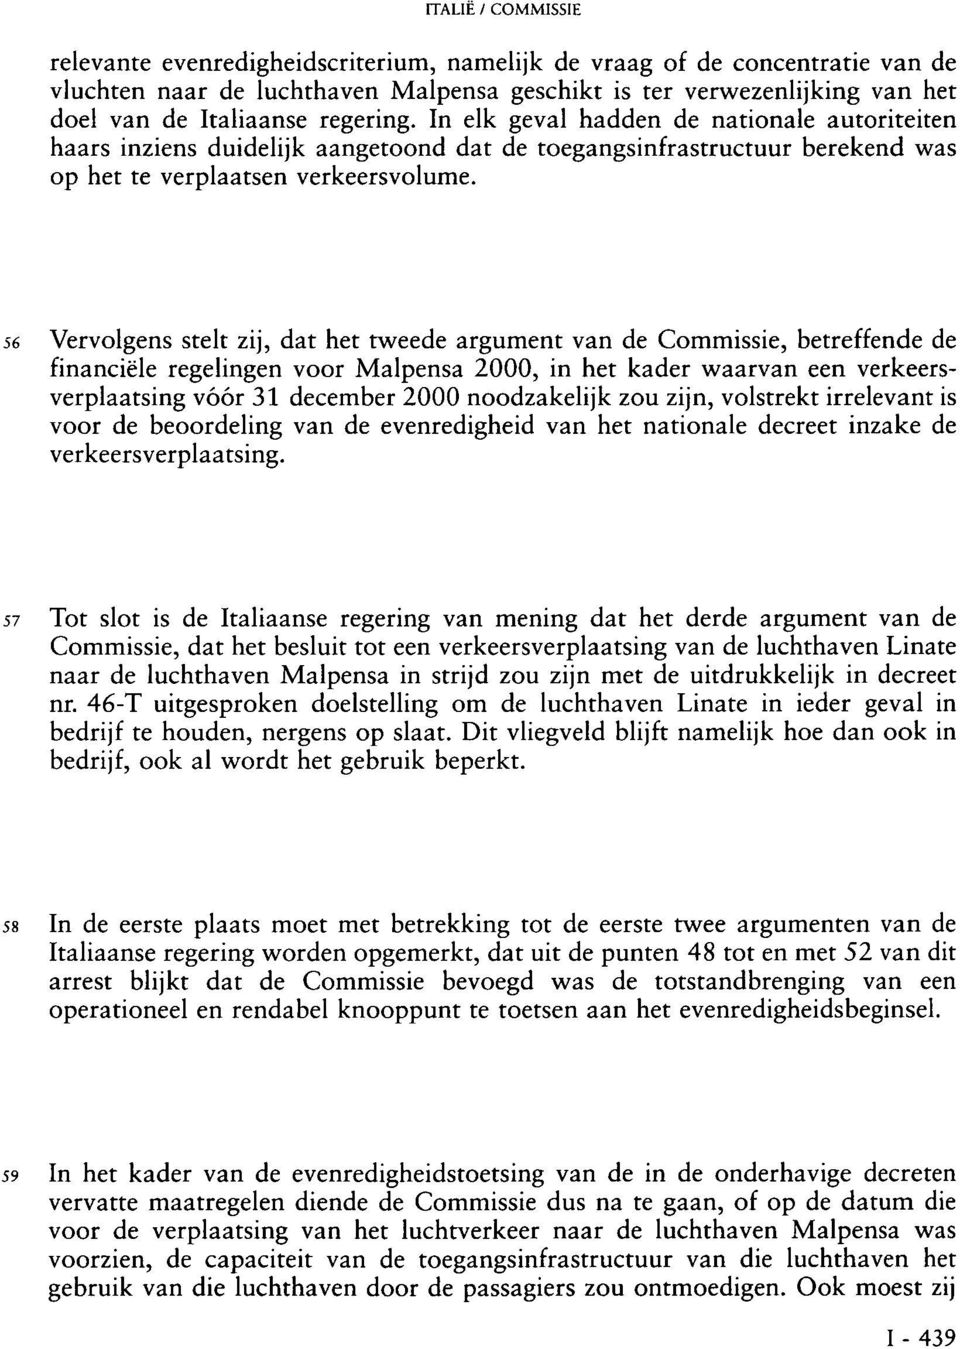 56 Vervolgens stelt zij, dat het tweede argument van de Commissie, betreffende de financiële regelingen voor Malpensa 2000, in het kader waarvan een verkeersverplaatsing vóór 31 december 2000